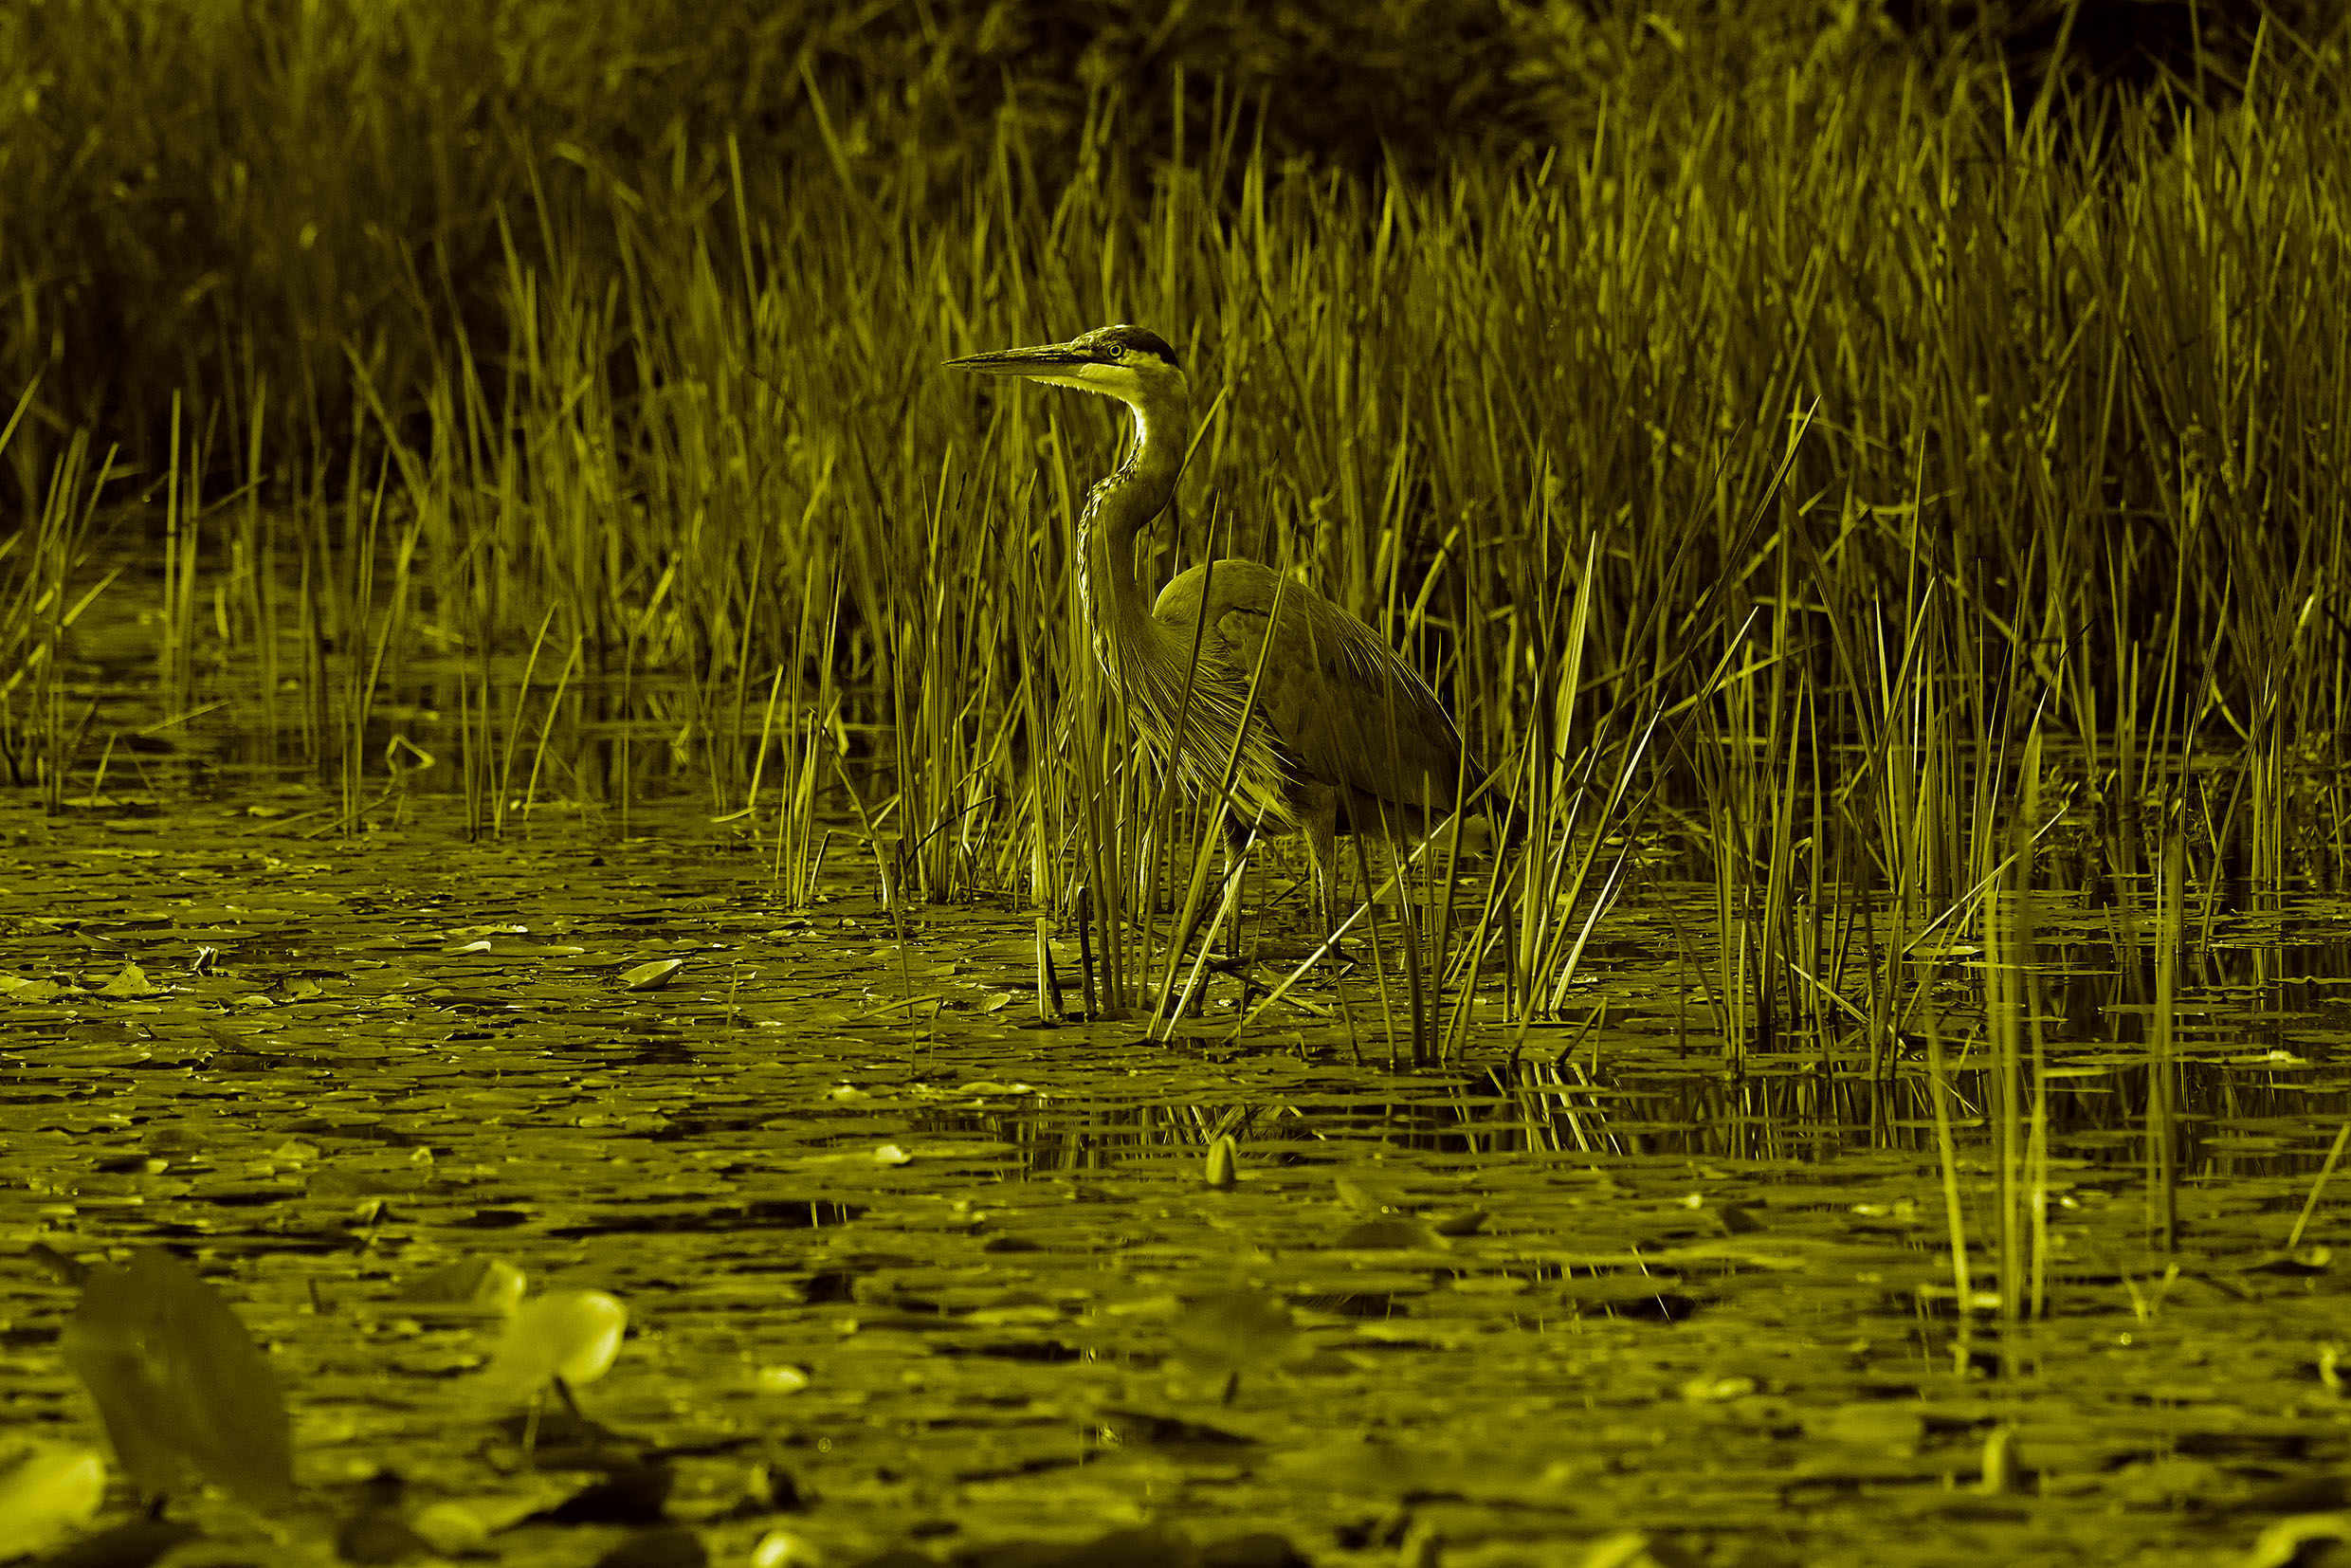 Heron wading though lake